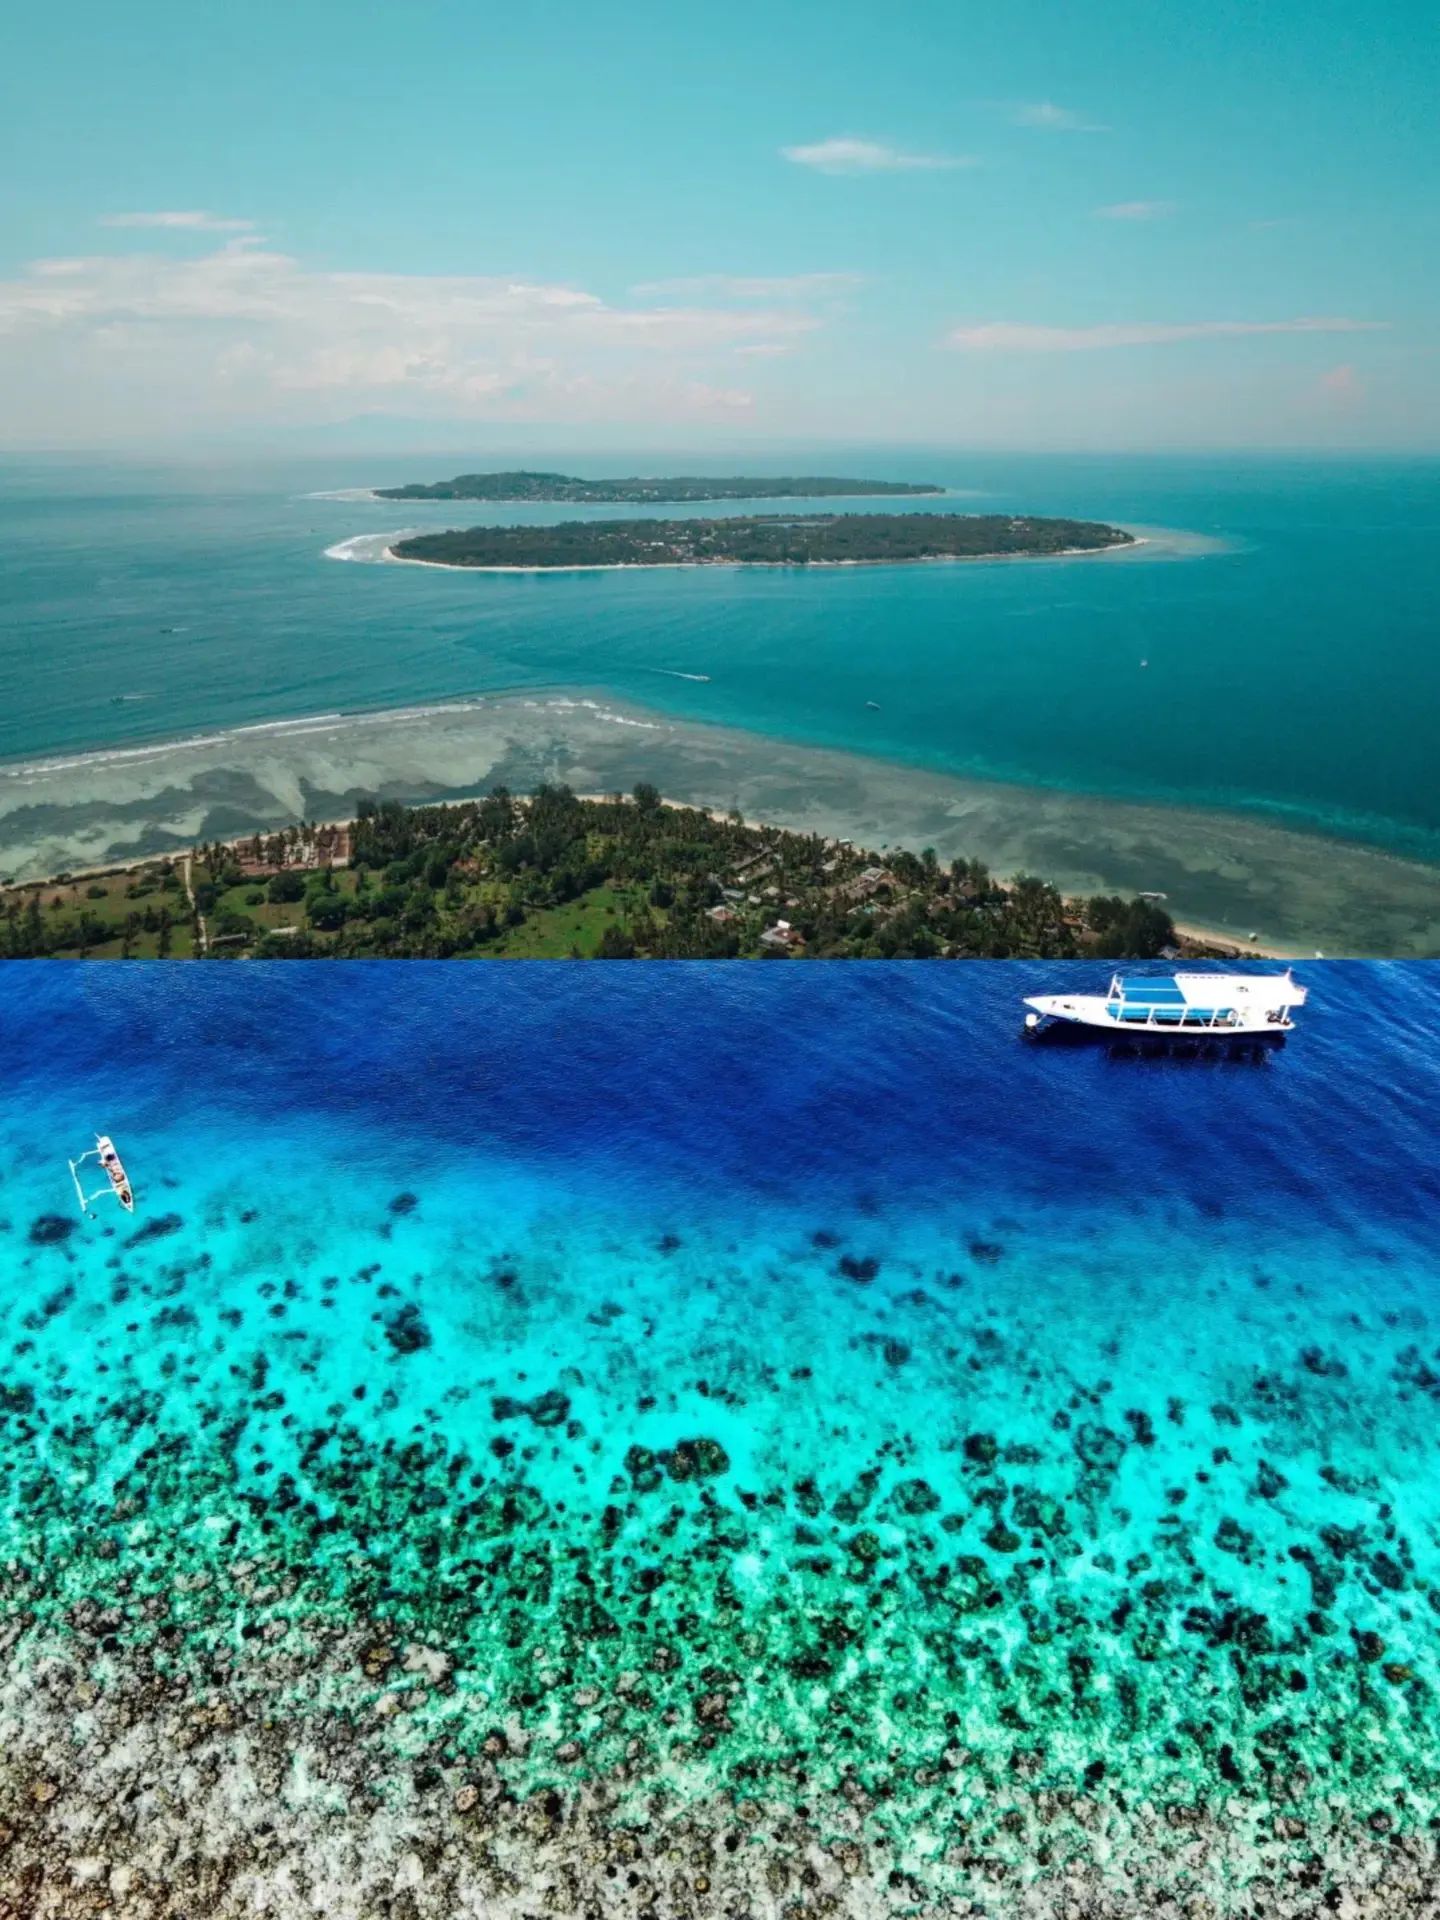 龙目岛|印尼龙目岛攻略，比巴厘岛更美更小众